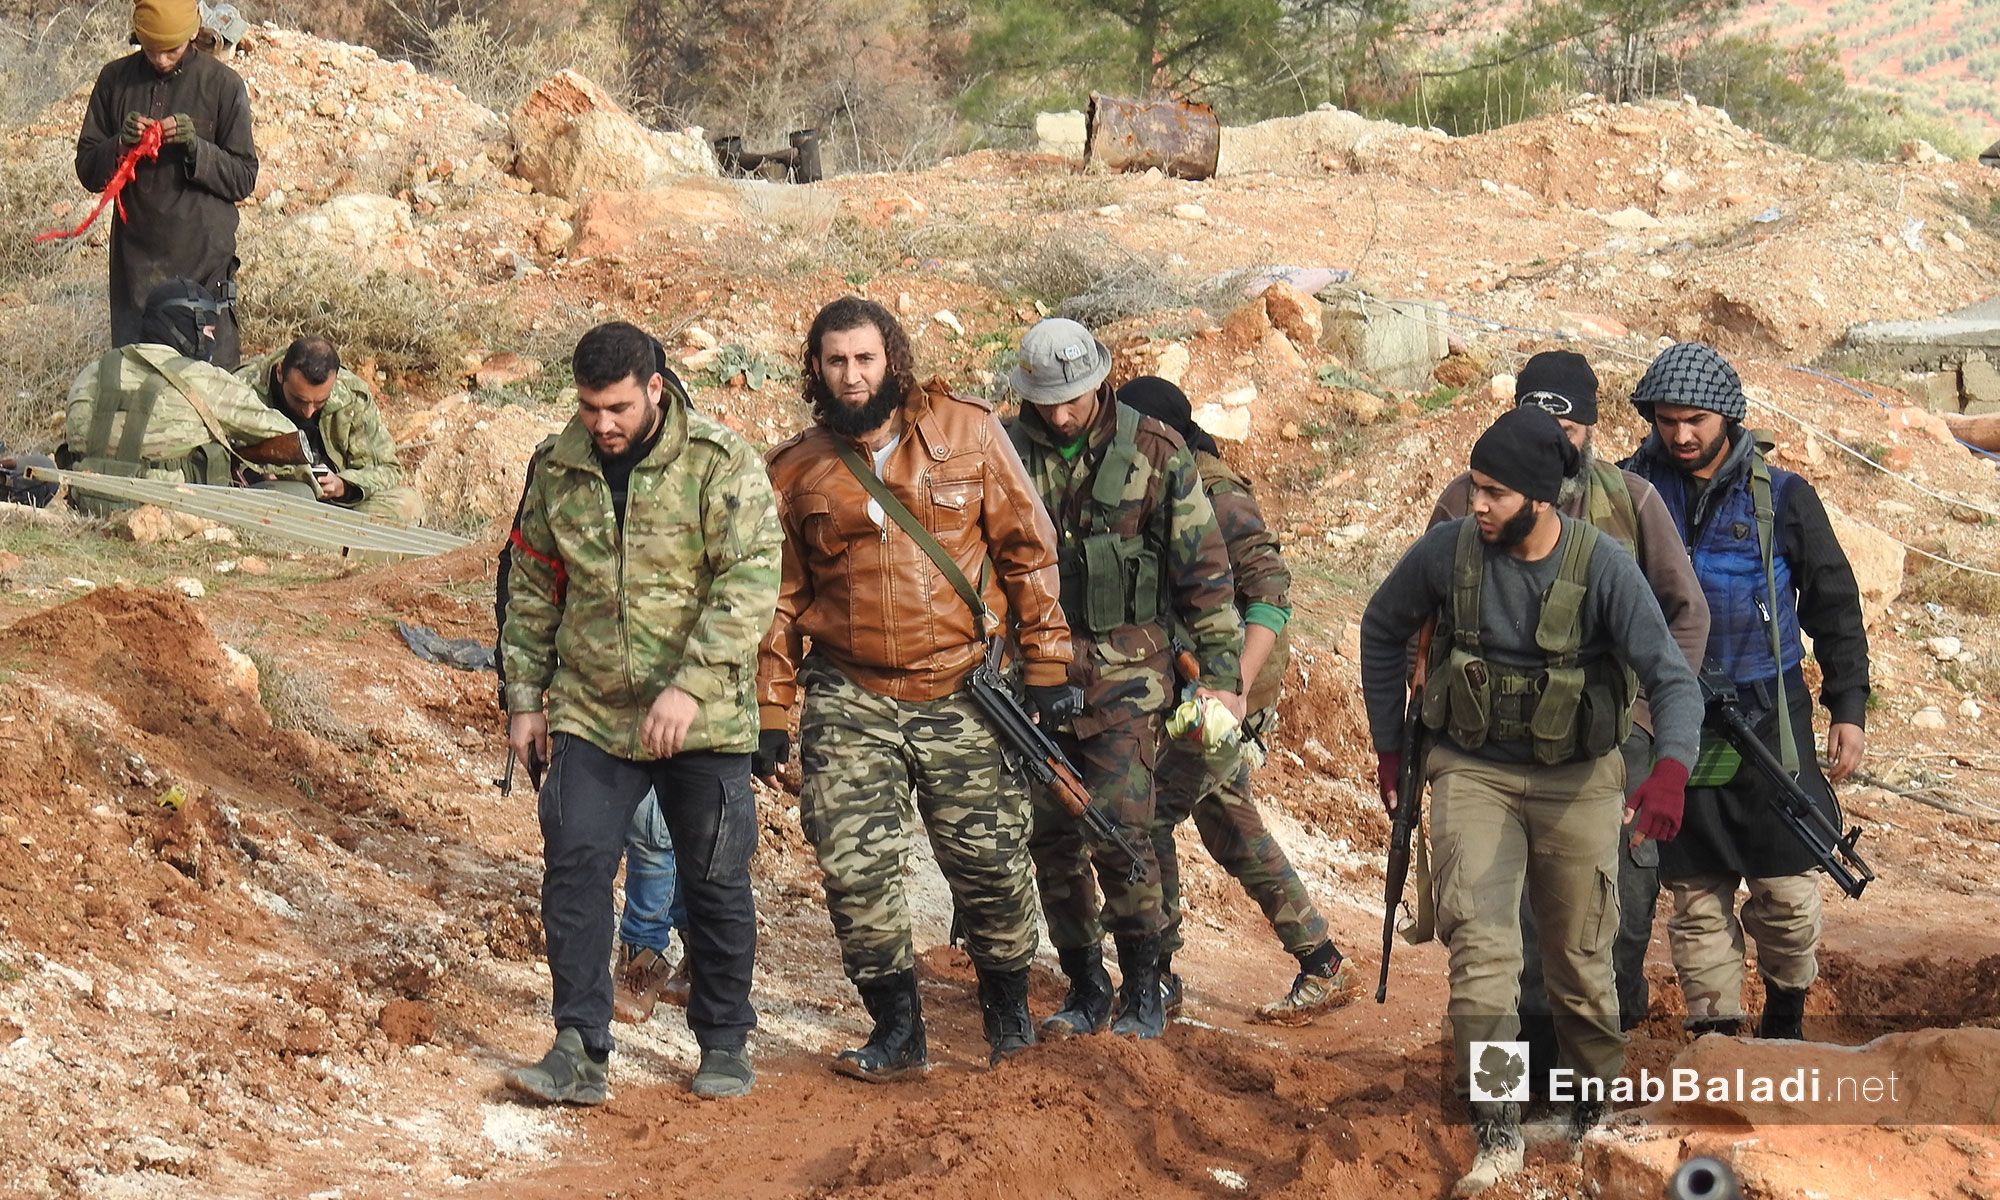 عناصر من الجيش الحر في معركة "غصن الزيتون" في منطقة عفرين شمالي حلب - 1 شباط 2018 (عنب بلدي)